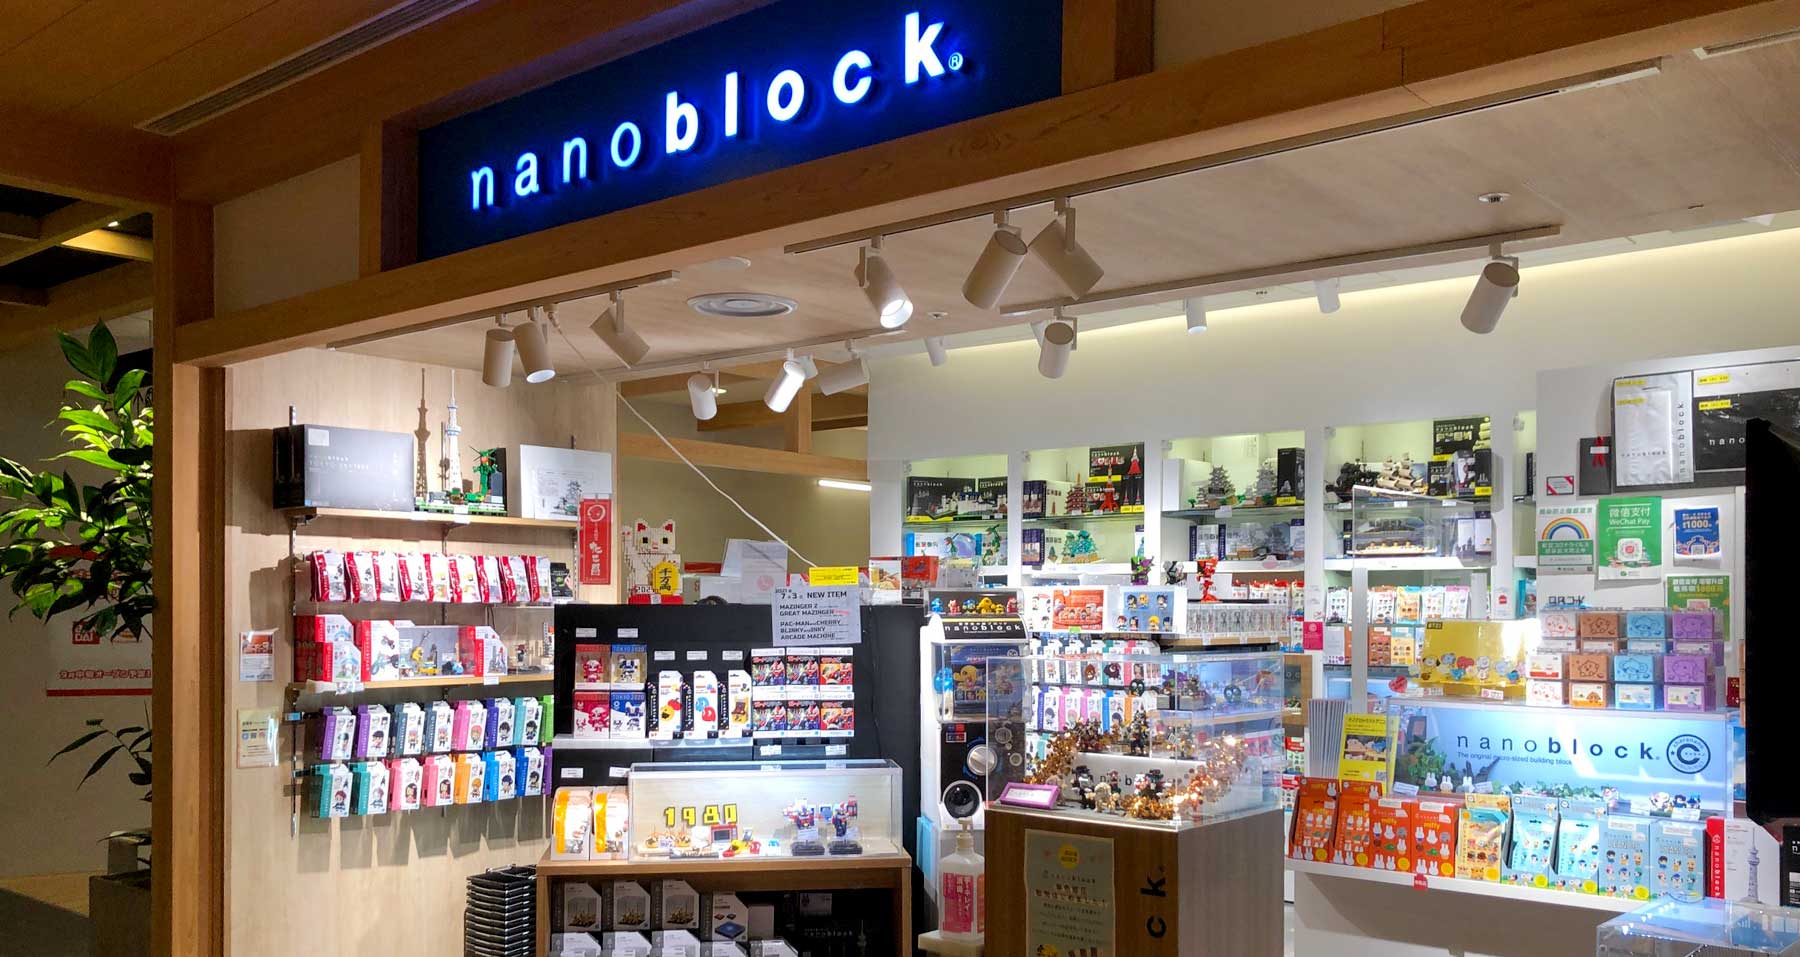 Nanoblock at Hoho Shop